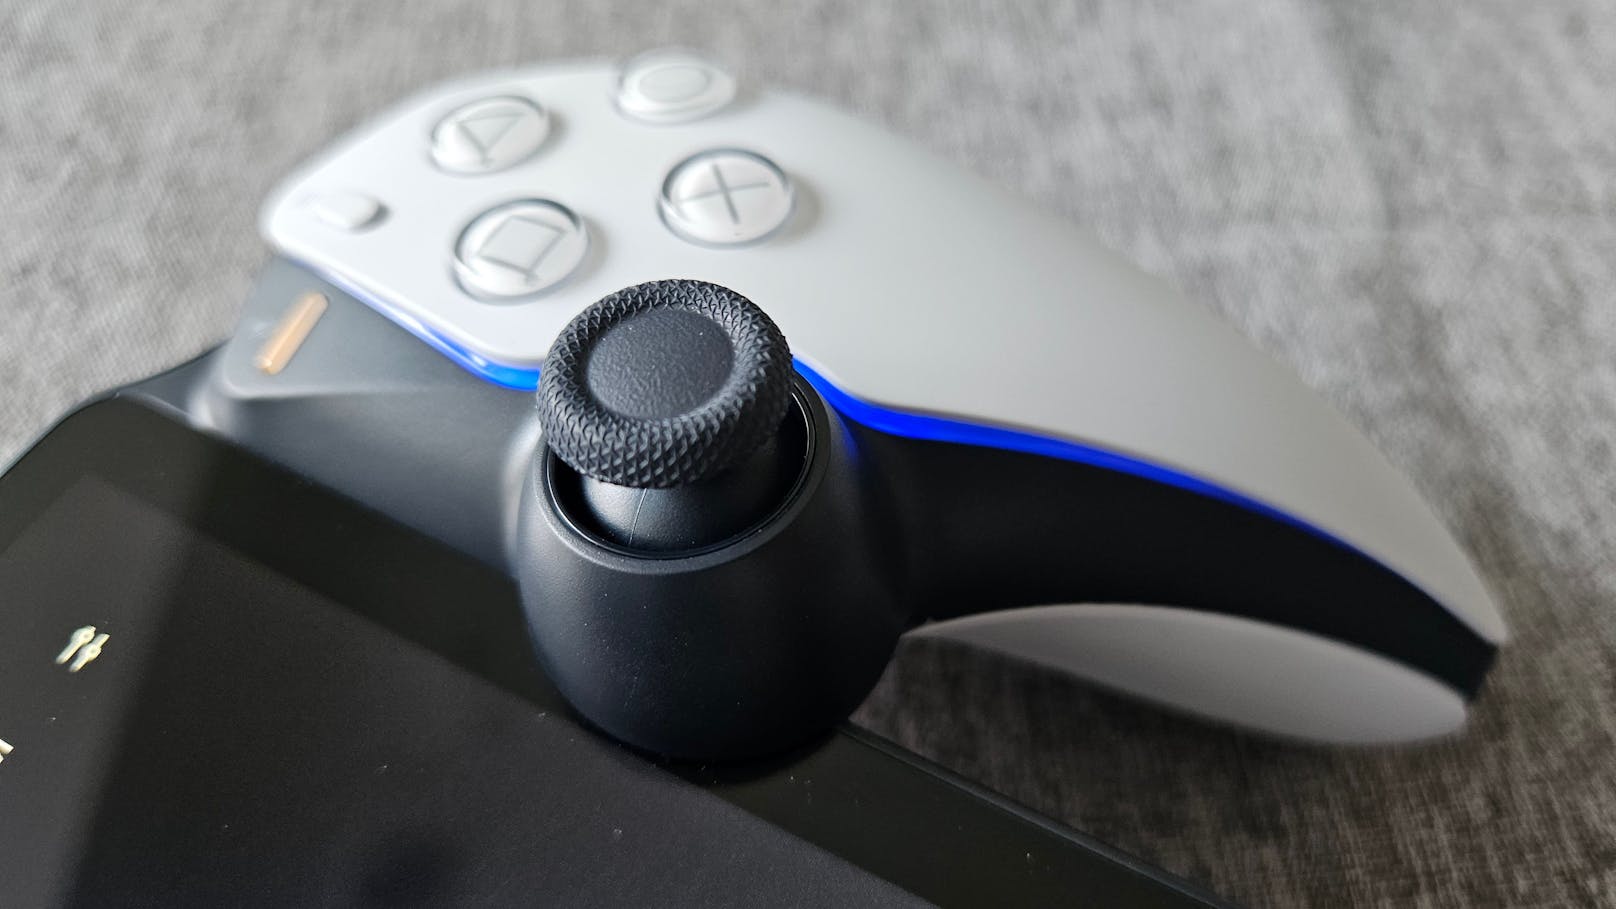 Wer ein Handheld erwartet, auf dem PlayStation-5-Spiele ohne weitere Voraussetzungen gestreamt oder gar installiert werden können, muss weiter warten.